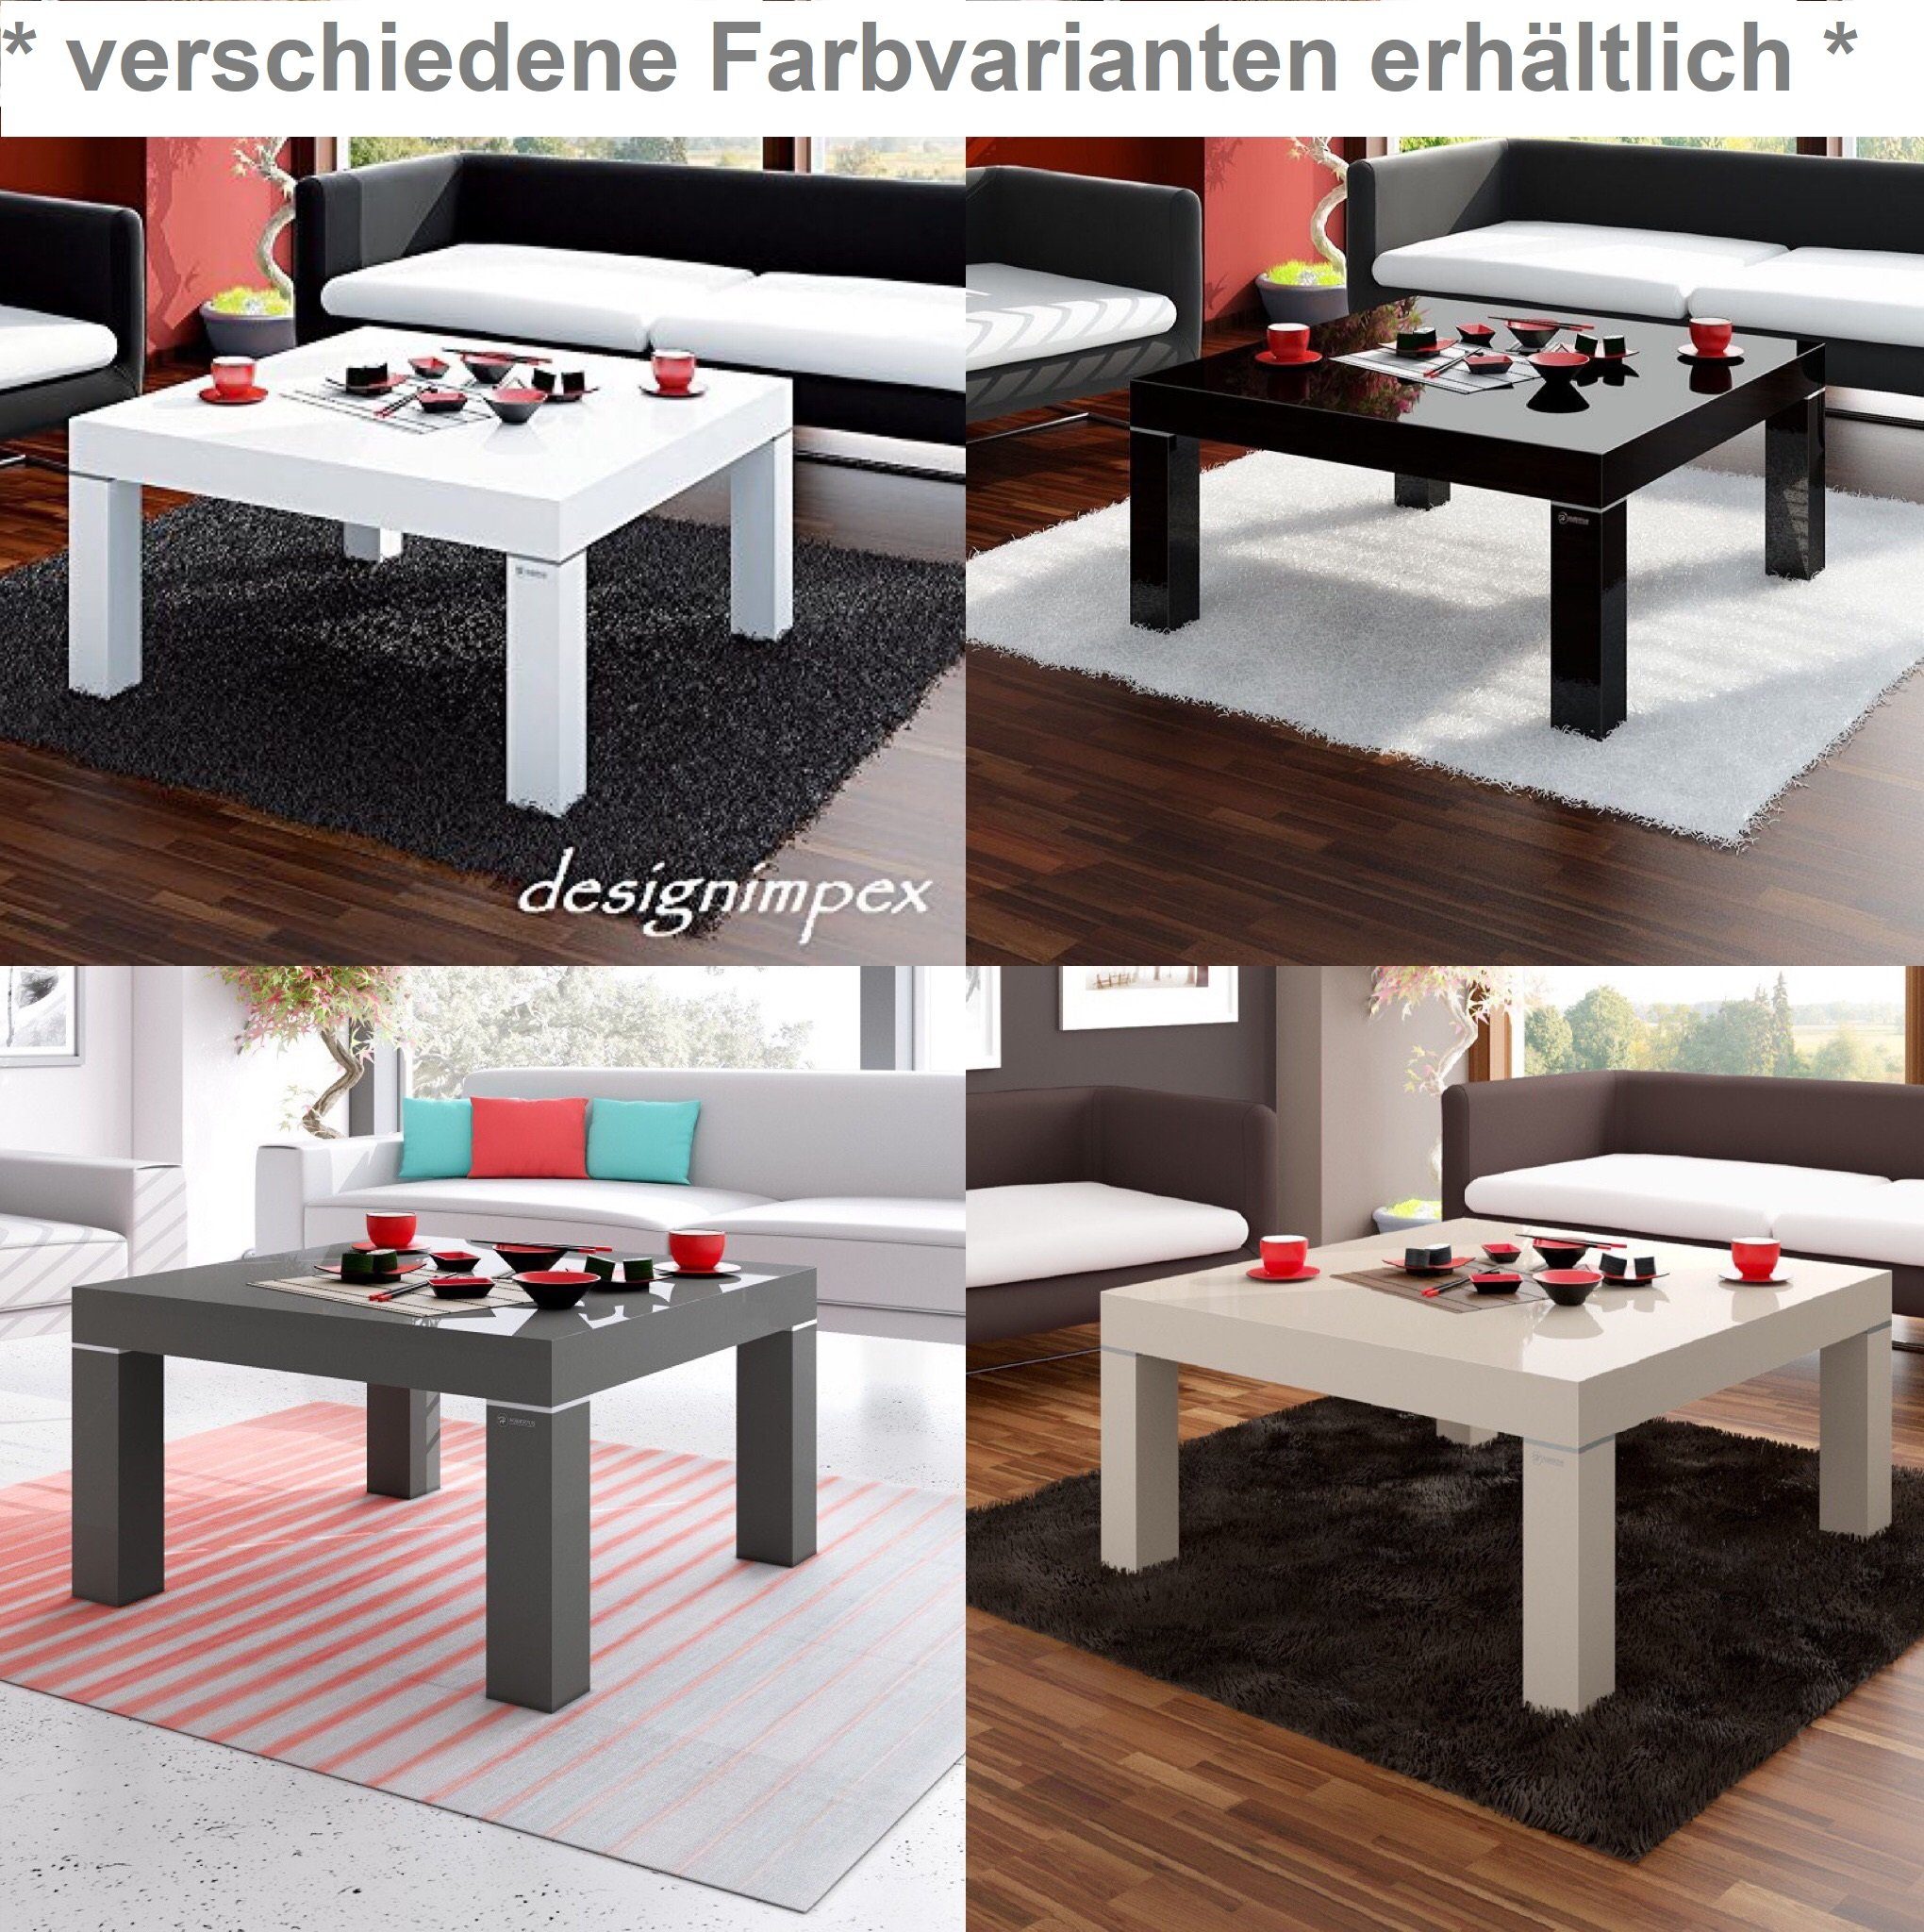 Schwarz Highgloss H-222 designimpex Couchtisch Design Hochglanz Couchtisch Tisch